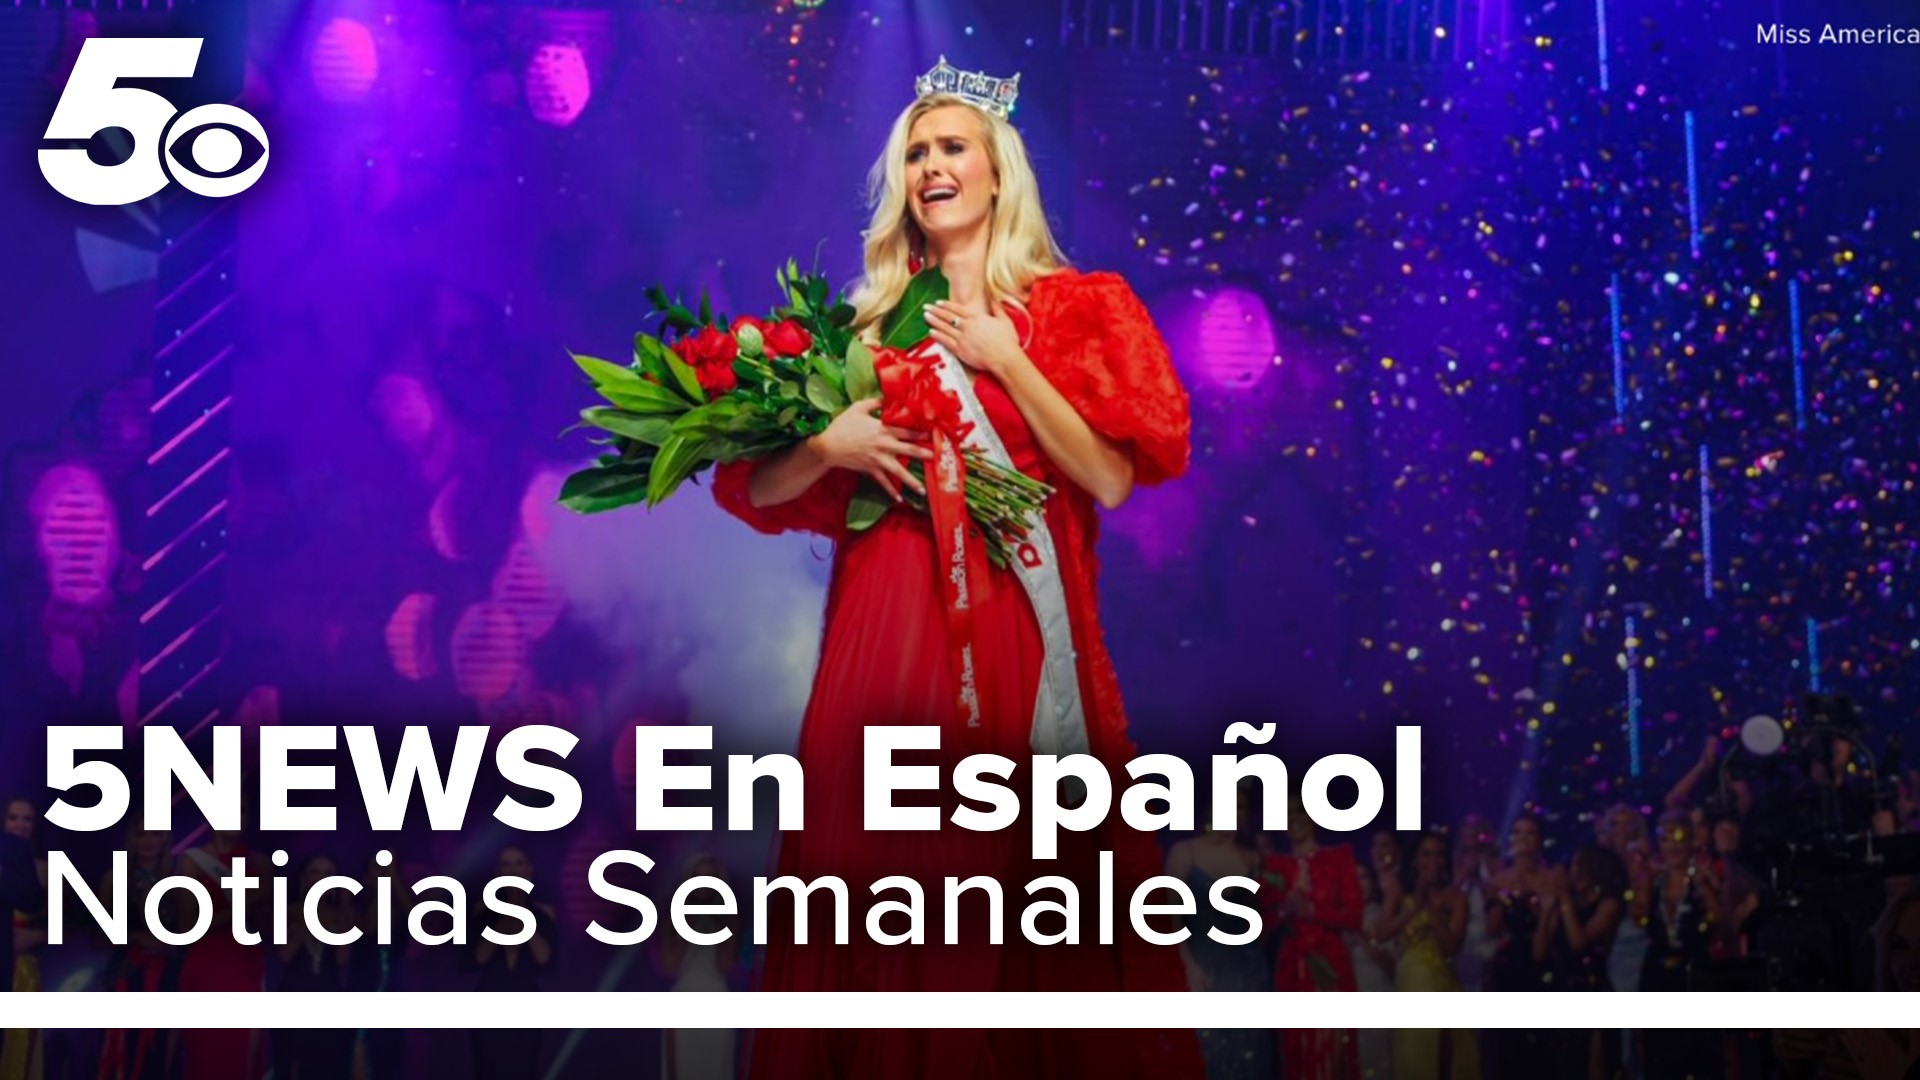 Enterate de las historias mas recientes en tus noticias semanales con 5NEWS En Español.